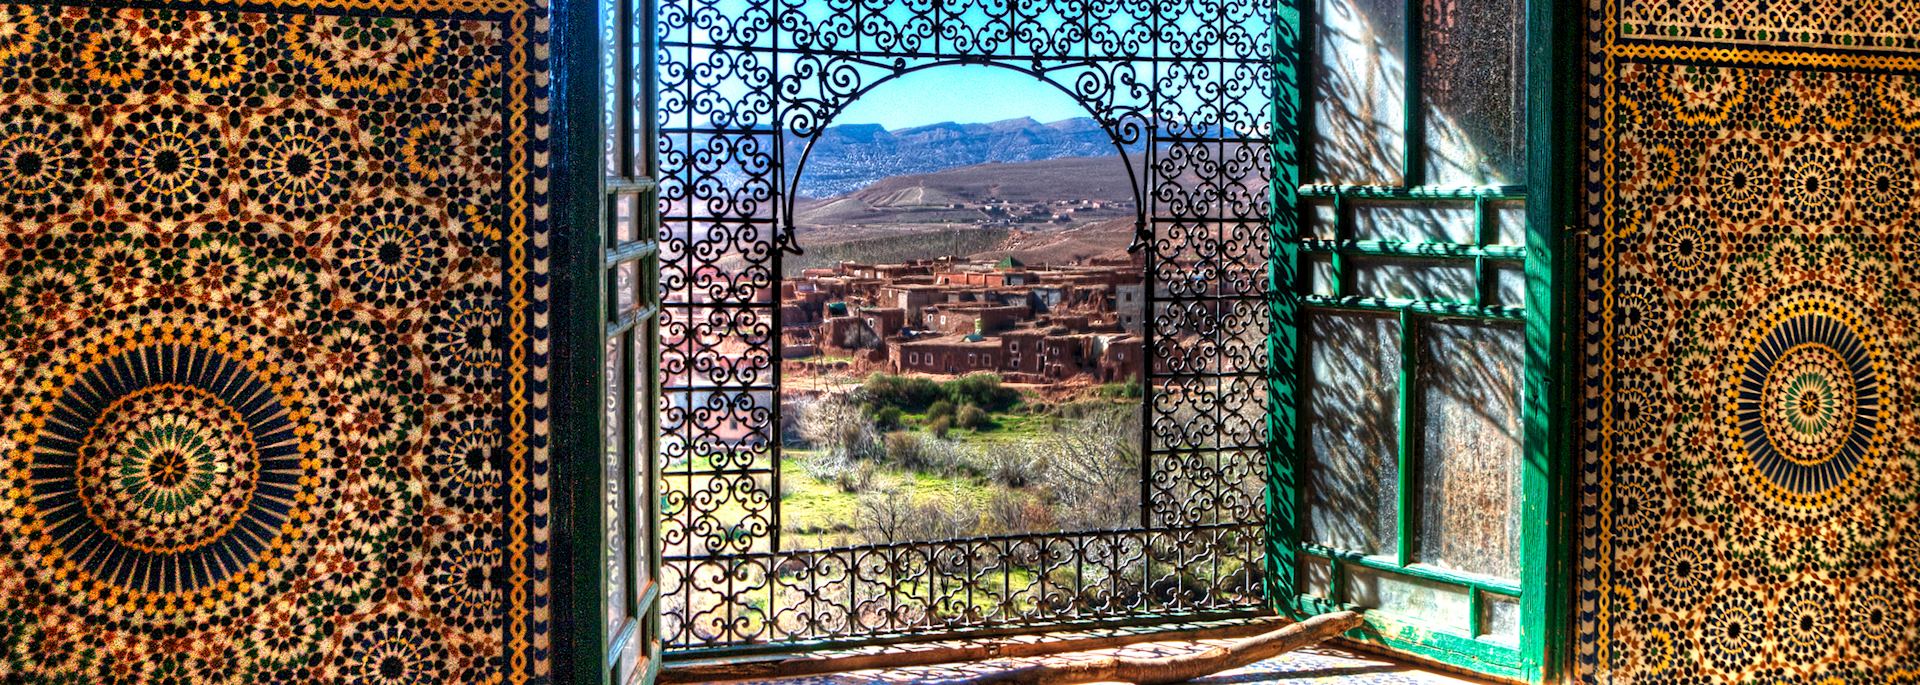 View from Kasbah Telouet